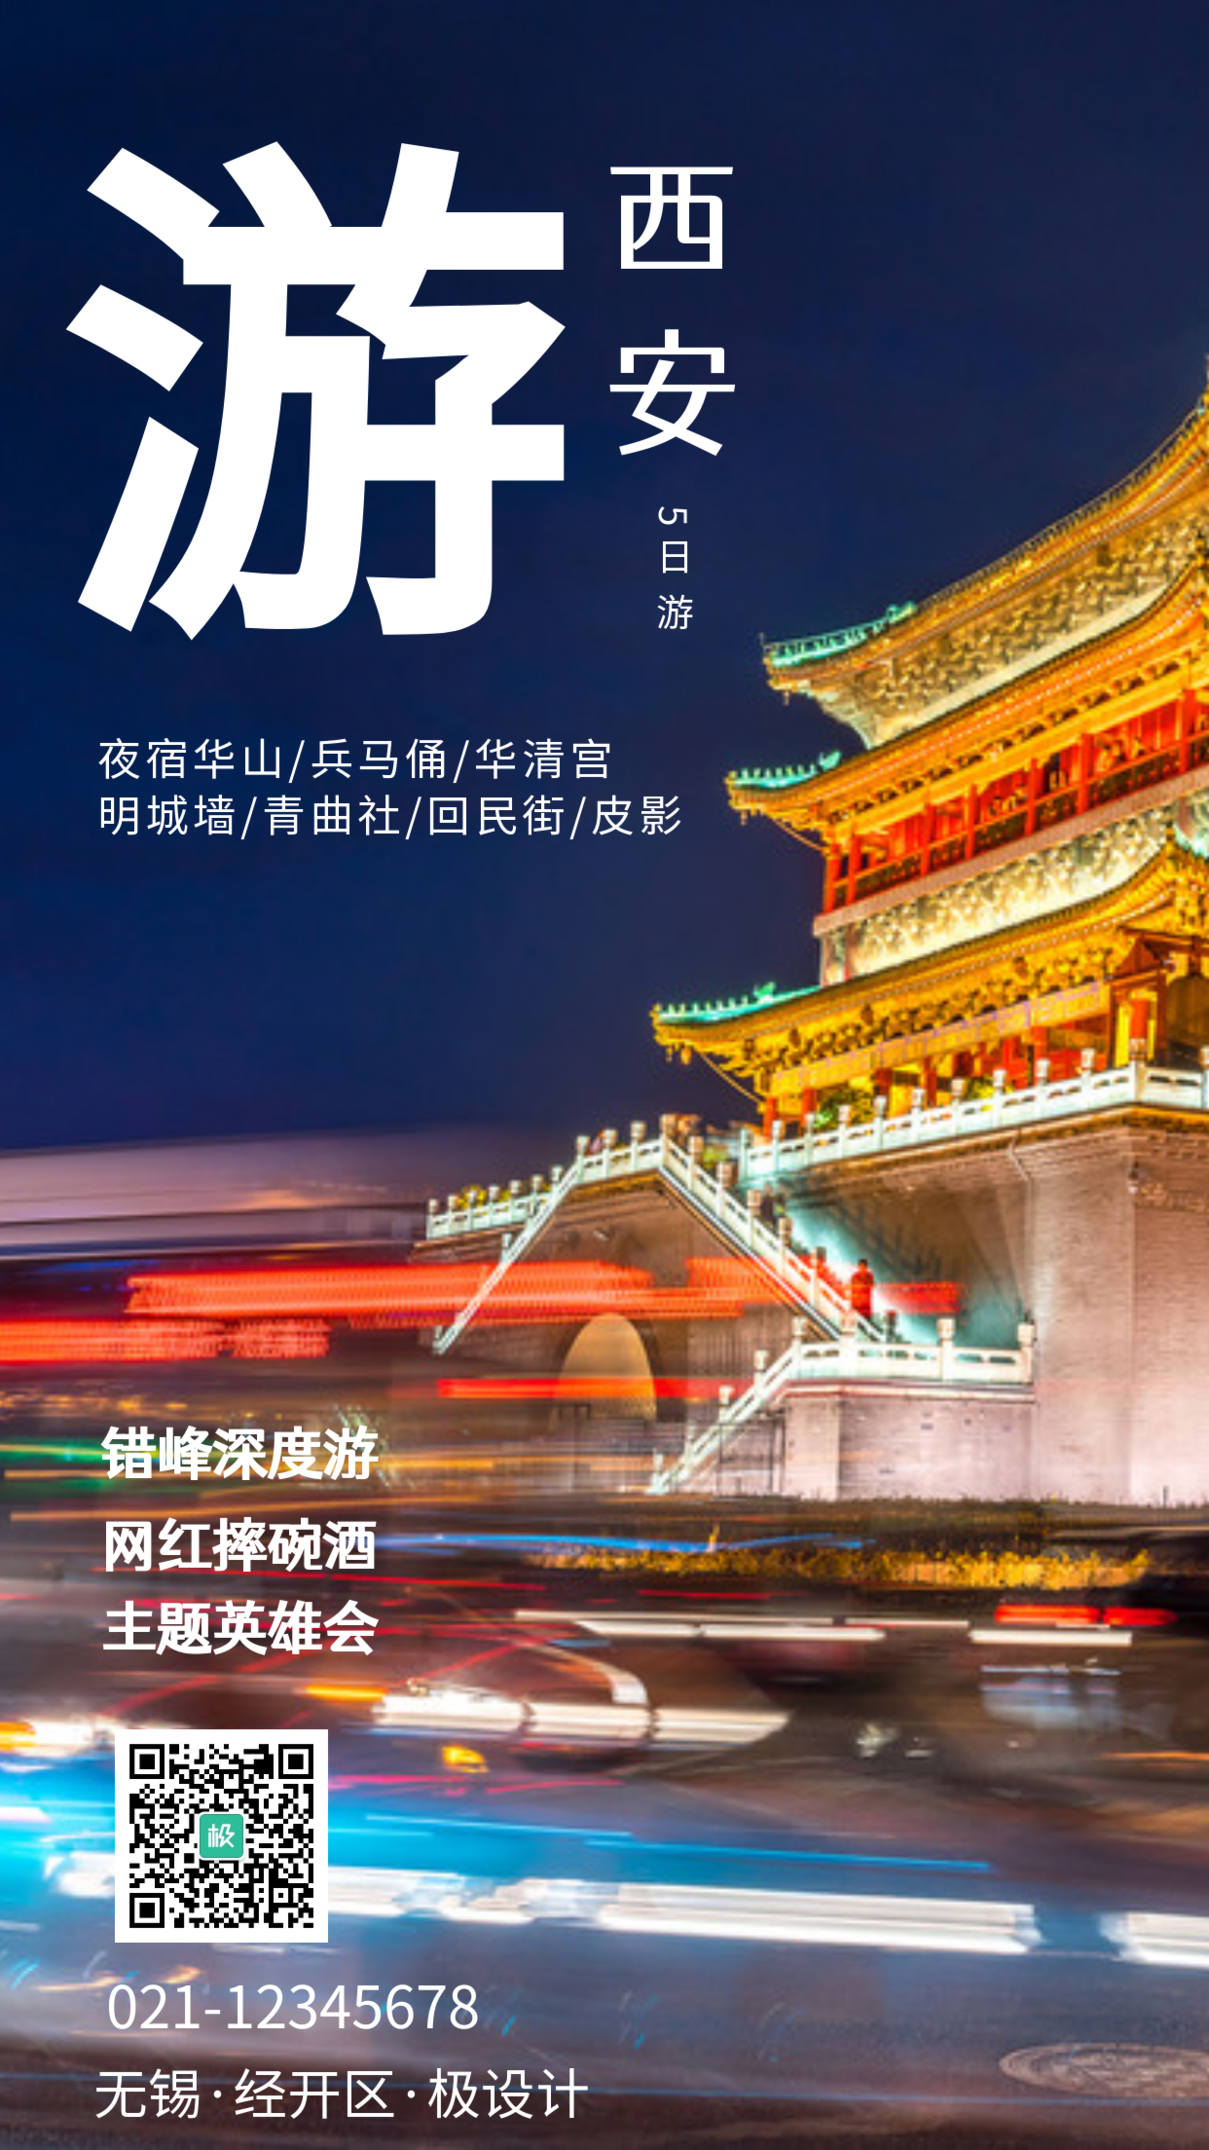 西安五日游旅游宣传手机摄影图海报